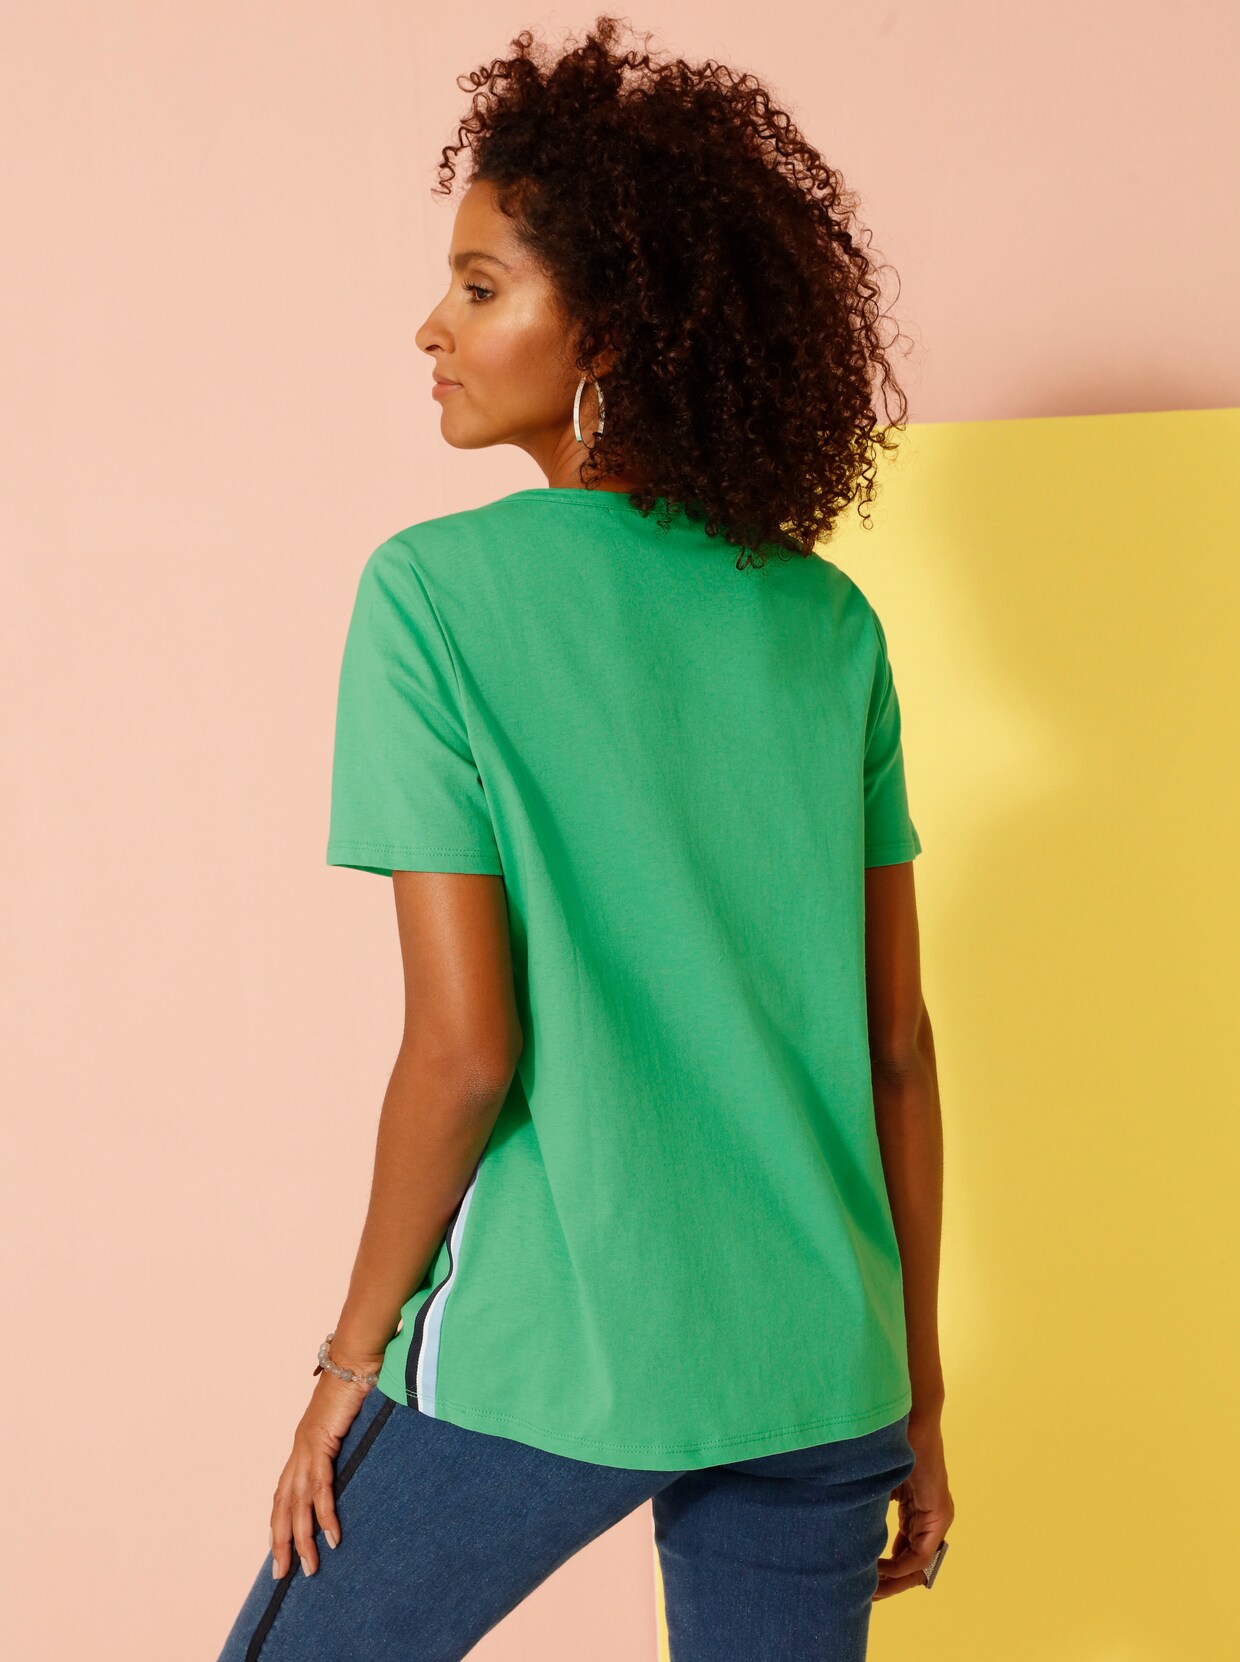 Tričko s krátkým rukávem - zelená